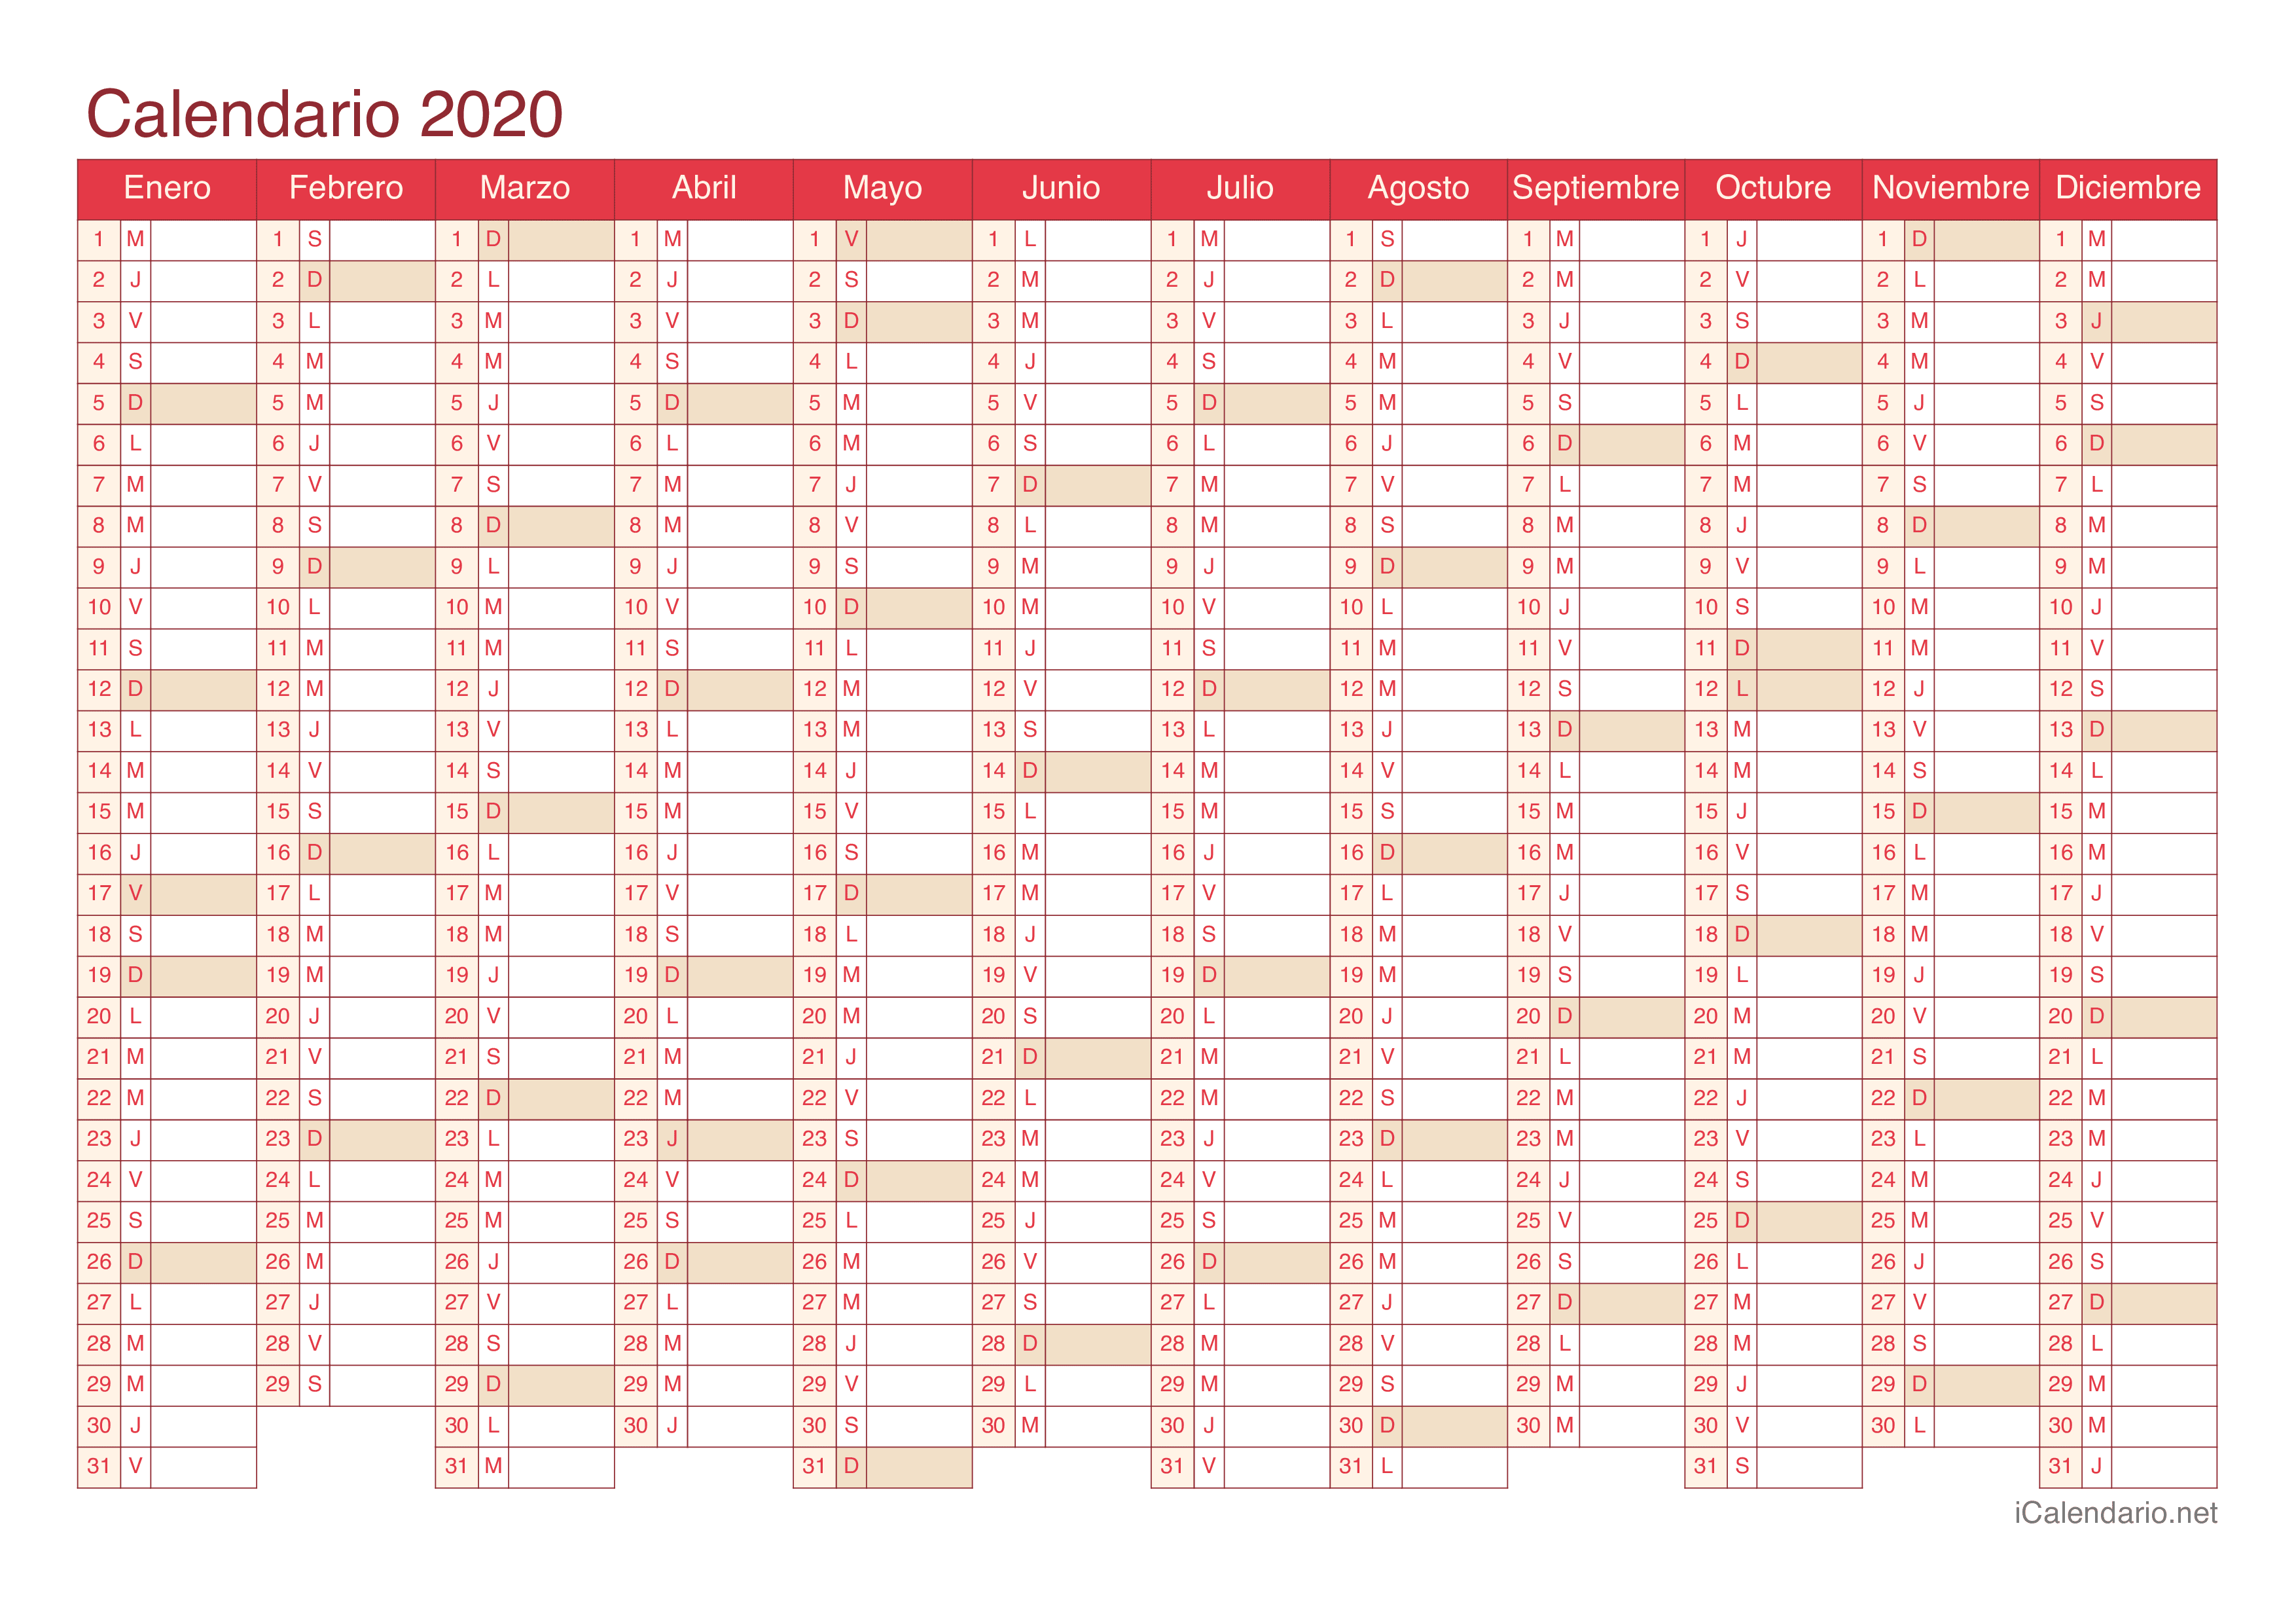 Calendario 2020 - Cherry